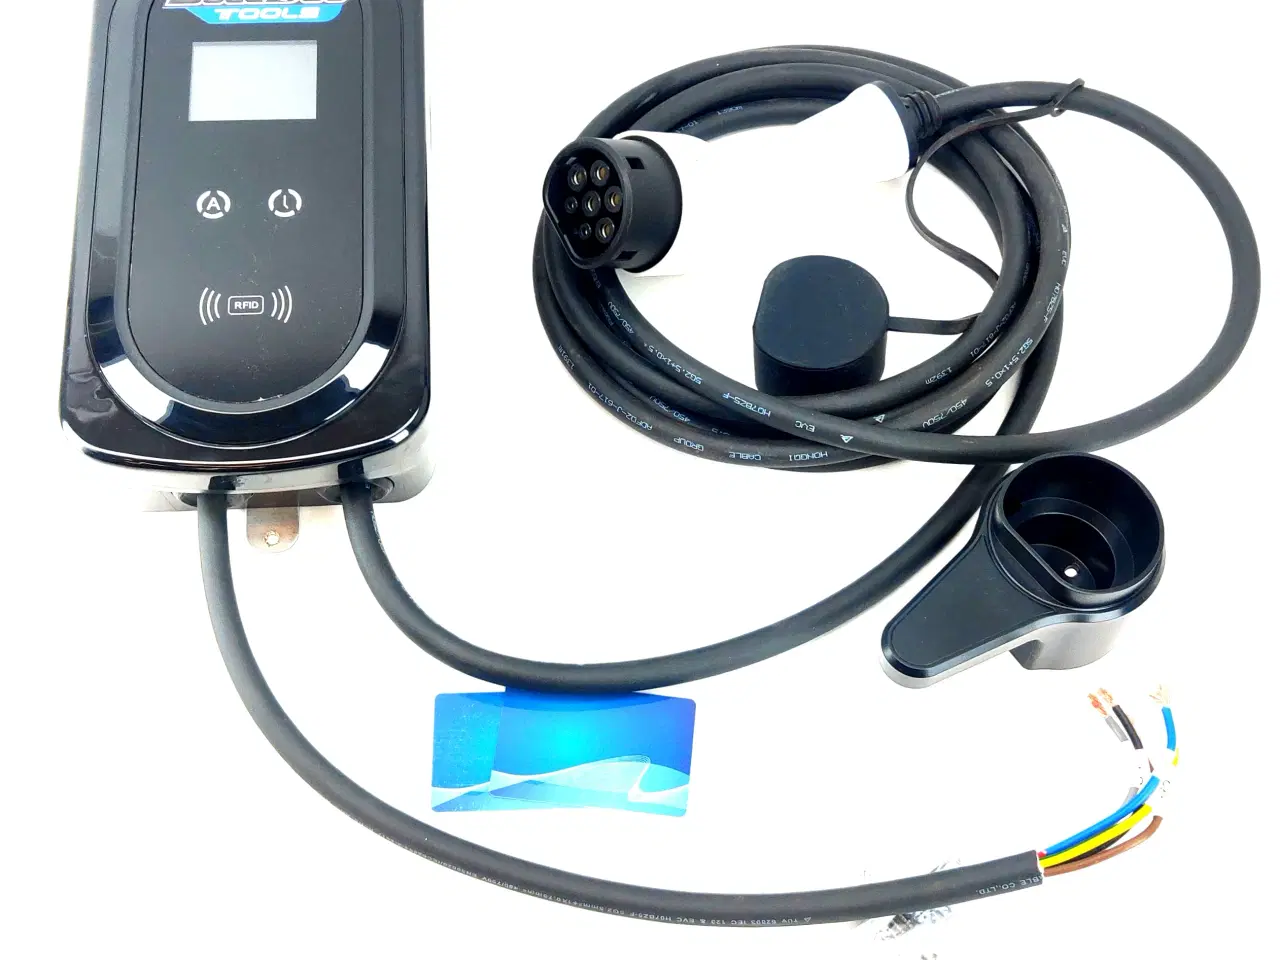 Billede 2 - Elbil oplader 8-16A med LCD display, RFID kort, app styring og 5 meter kabel